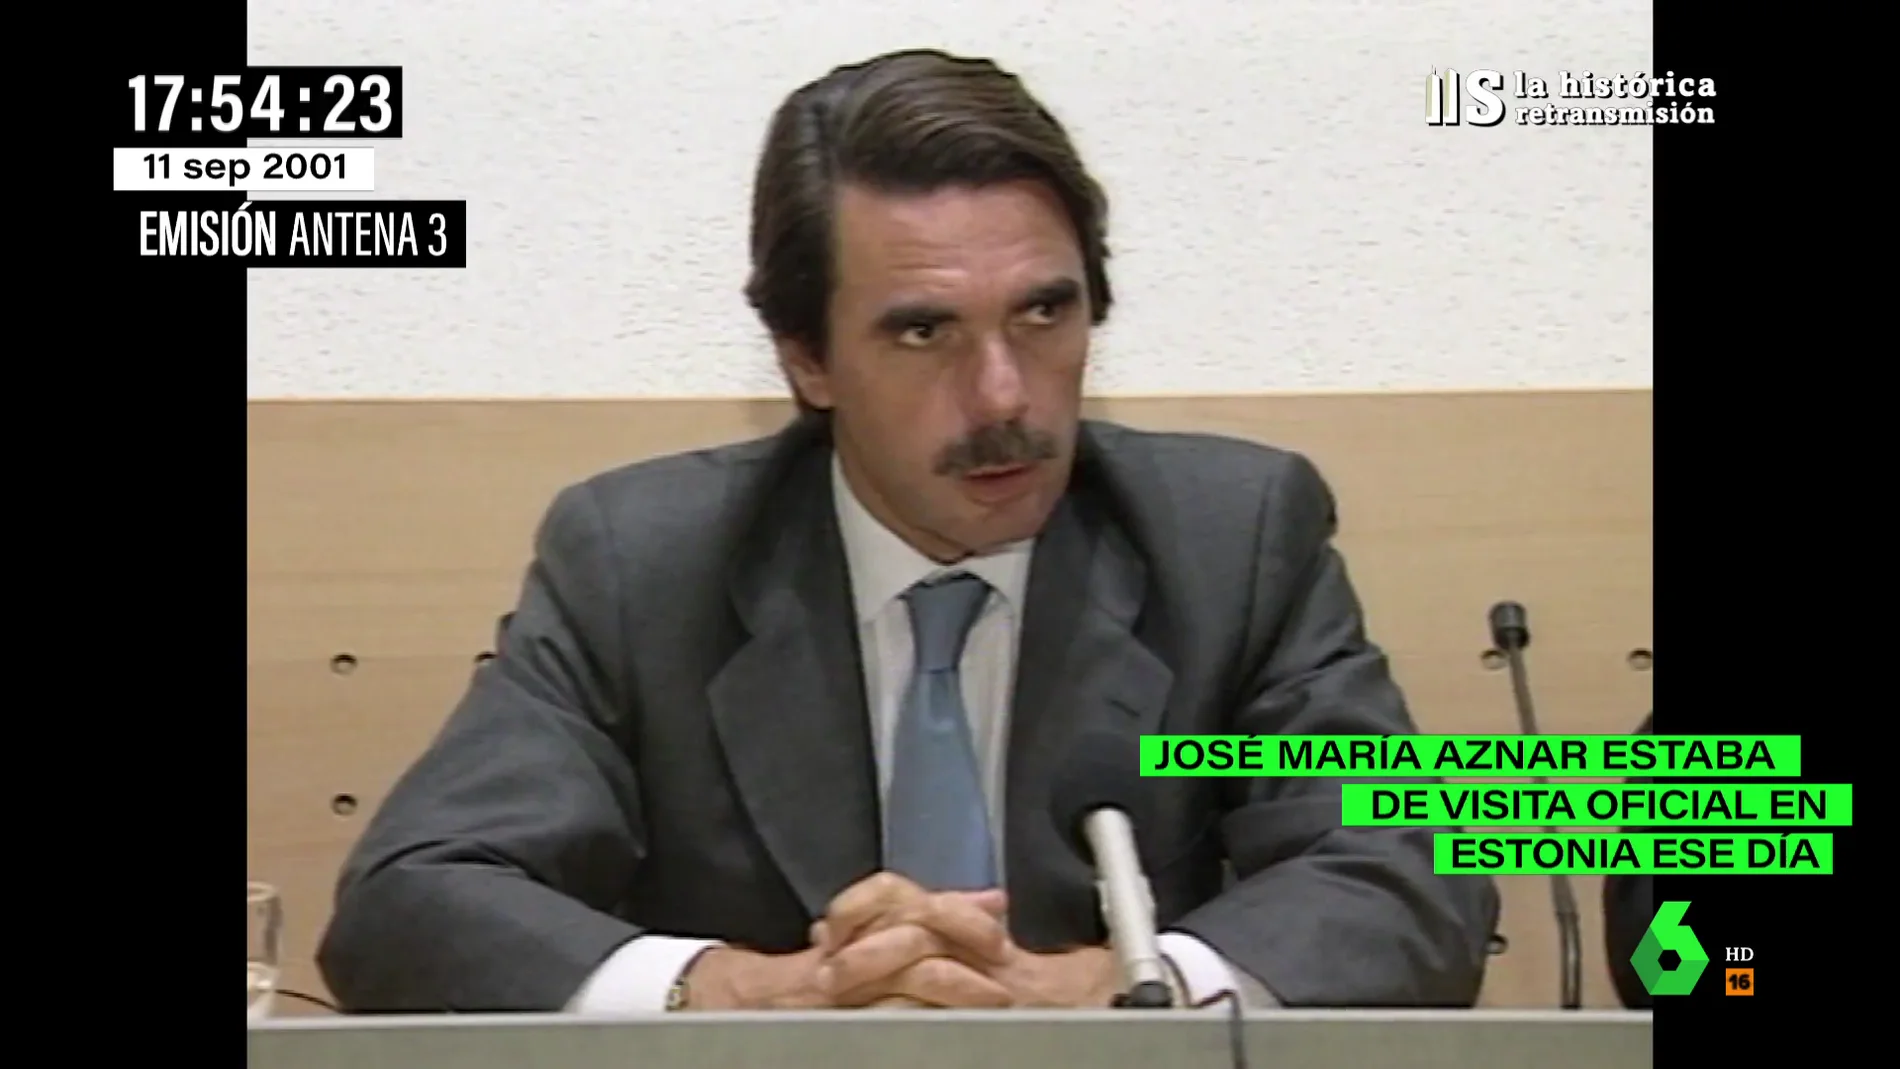 Estas fueron las primeras palabras de José María Aznar sobre el 11S: "No se debe distinguir entre terroristas"